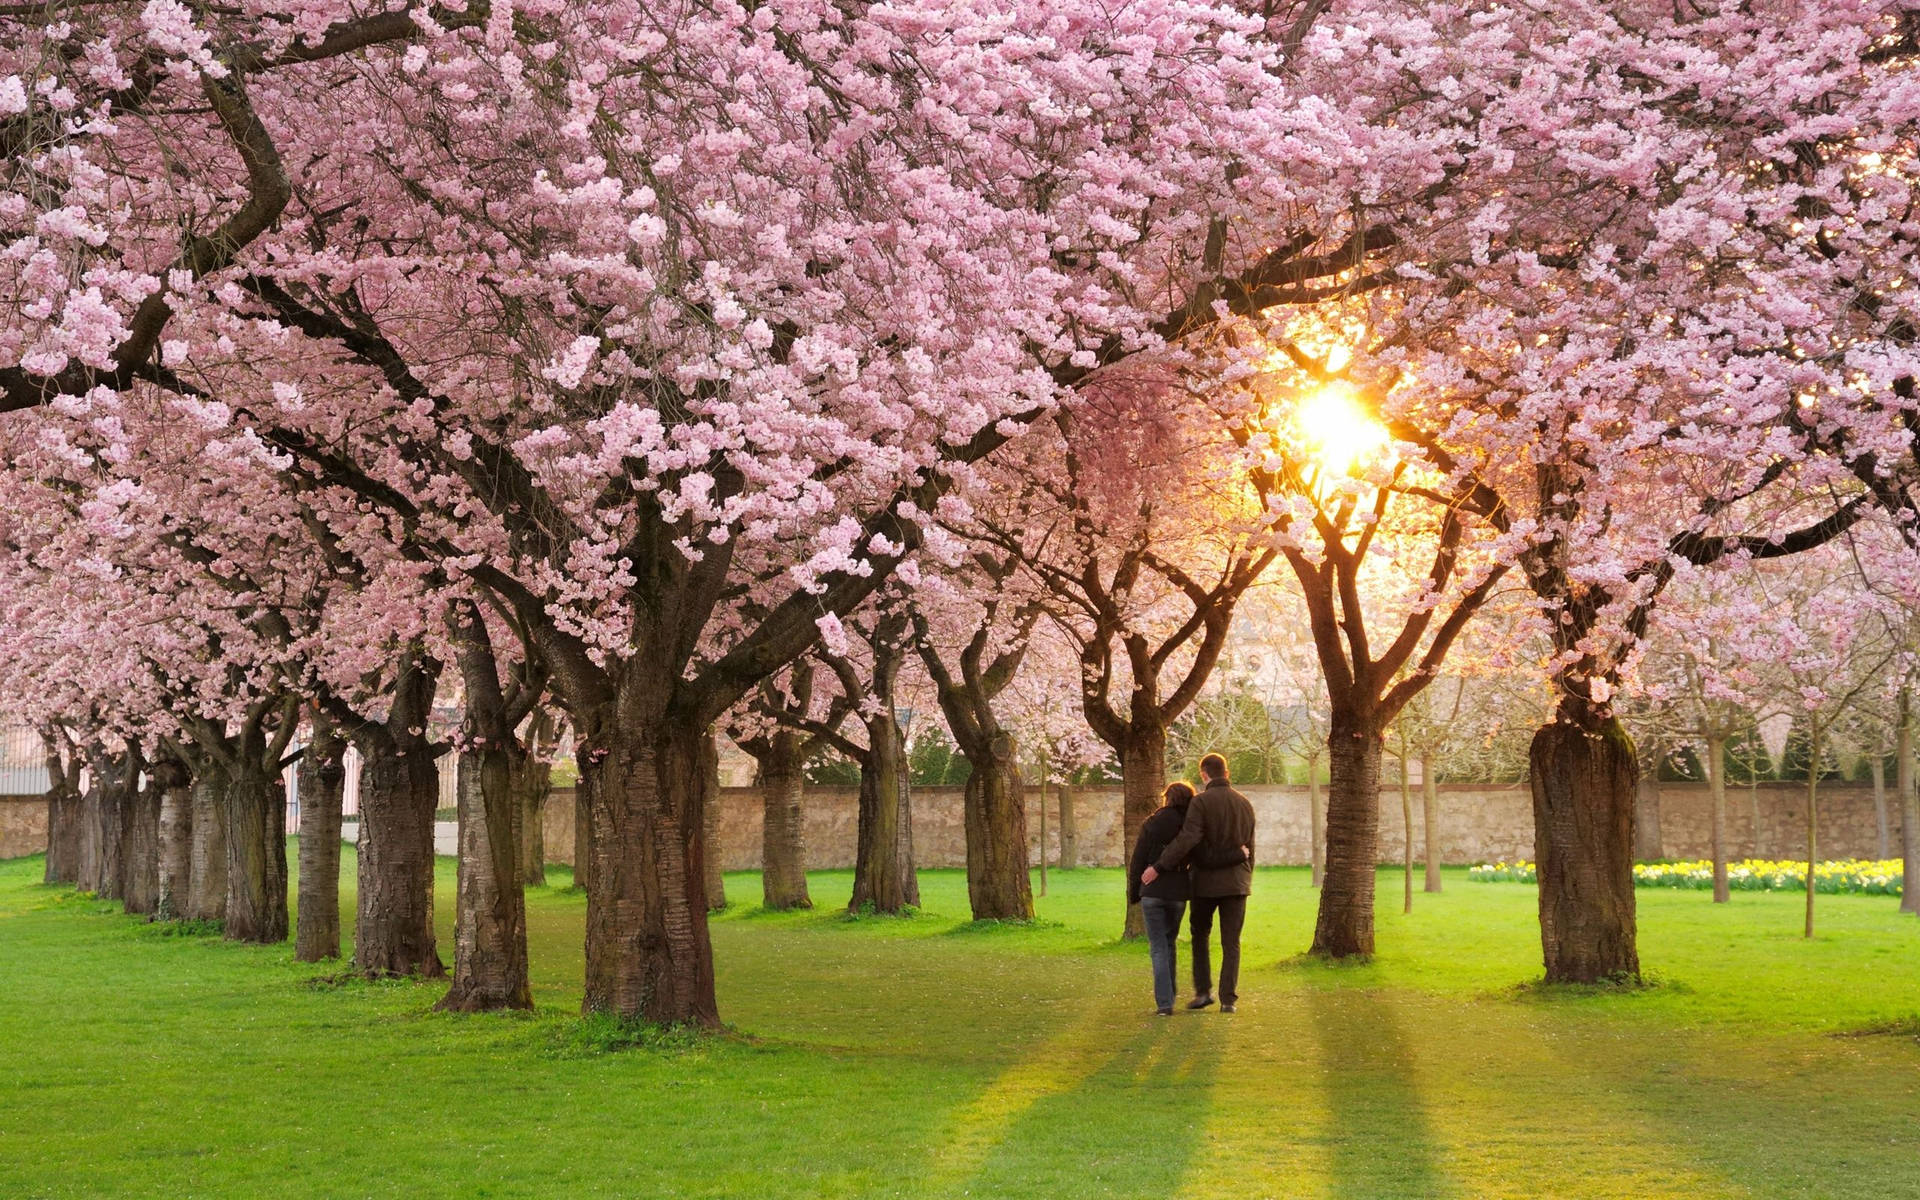 Sway in a Gentle Breeze: Smuk forår pige og kirsebær blomstertræer sway i en blid brise. Wallpaper